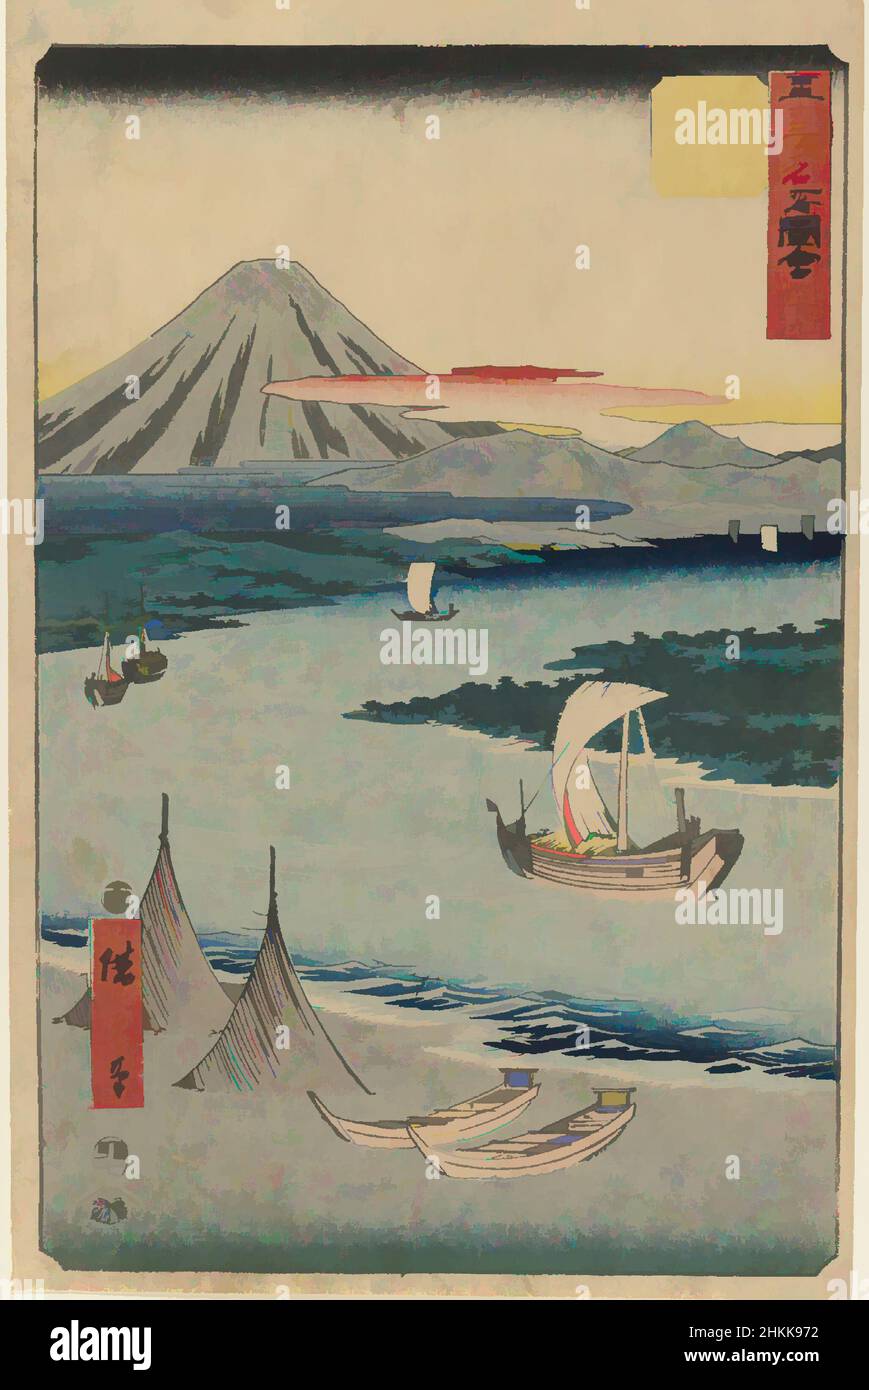 Kunst inspiriert von No. 19, Ejiri: Tago Bay und Miho no Matsubara, aus der Serie berühmte Sehenswürdigkeiten der 53 Stationen, Utagawa Hiroshige, Ando, Japanisch, 1797-1858, Farbholzschnitt auf Papier, Japan, 1855, Edo-Zeit, 14 1/4 x 9 1/4 Zoll, 36,2 x 23,5 cm, Fukei-ga, Landschaft, Klassische Werke, die von Artotop mit einem Schuss Moderne modernisiert wurden. Formen, Farbe und Wert, auffällige visuelle Wirkung auf Kunst. Emotionen durch Freiheit von Kunstwerken auf zeitgemäße Weise. Eine zeitlose Botschaft, die eine wild kreative neue Richtung verfolgt. Künstler, die sich dem digitalen Medium zuwenden und die Artotop NFT erschaffen Stockfoto